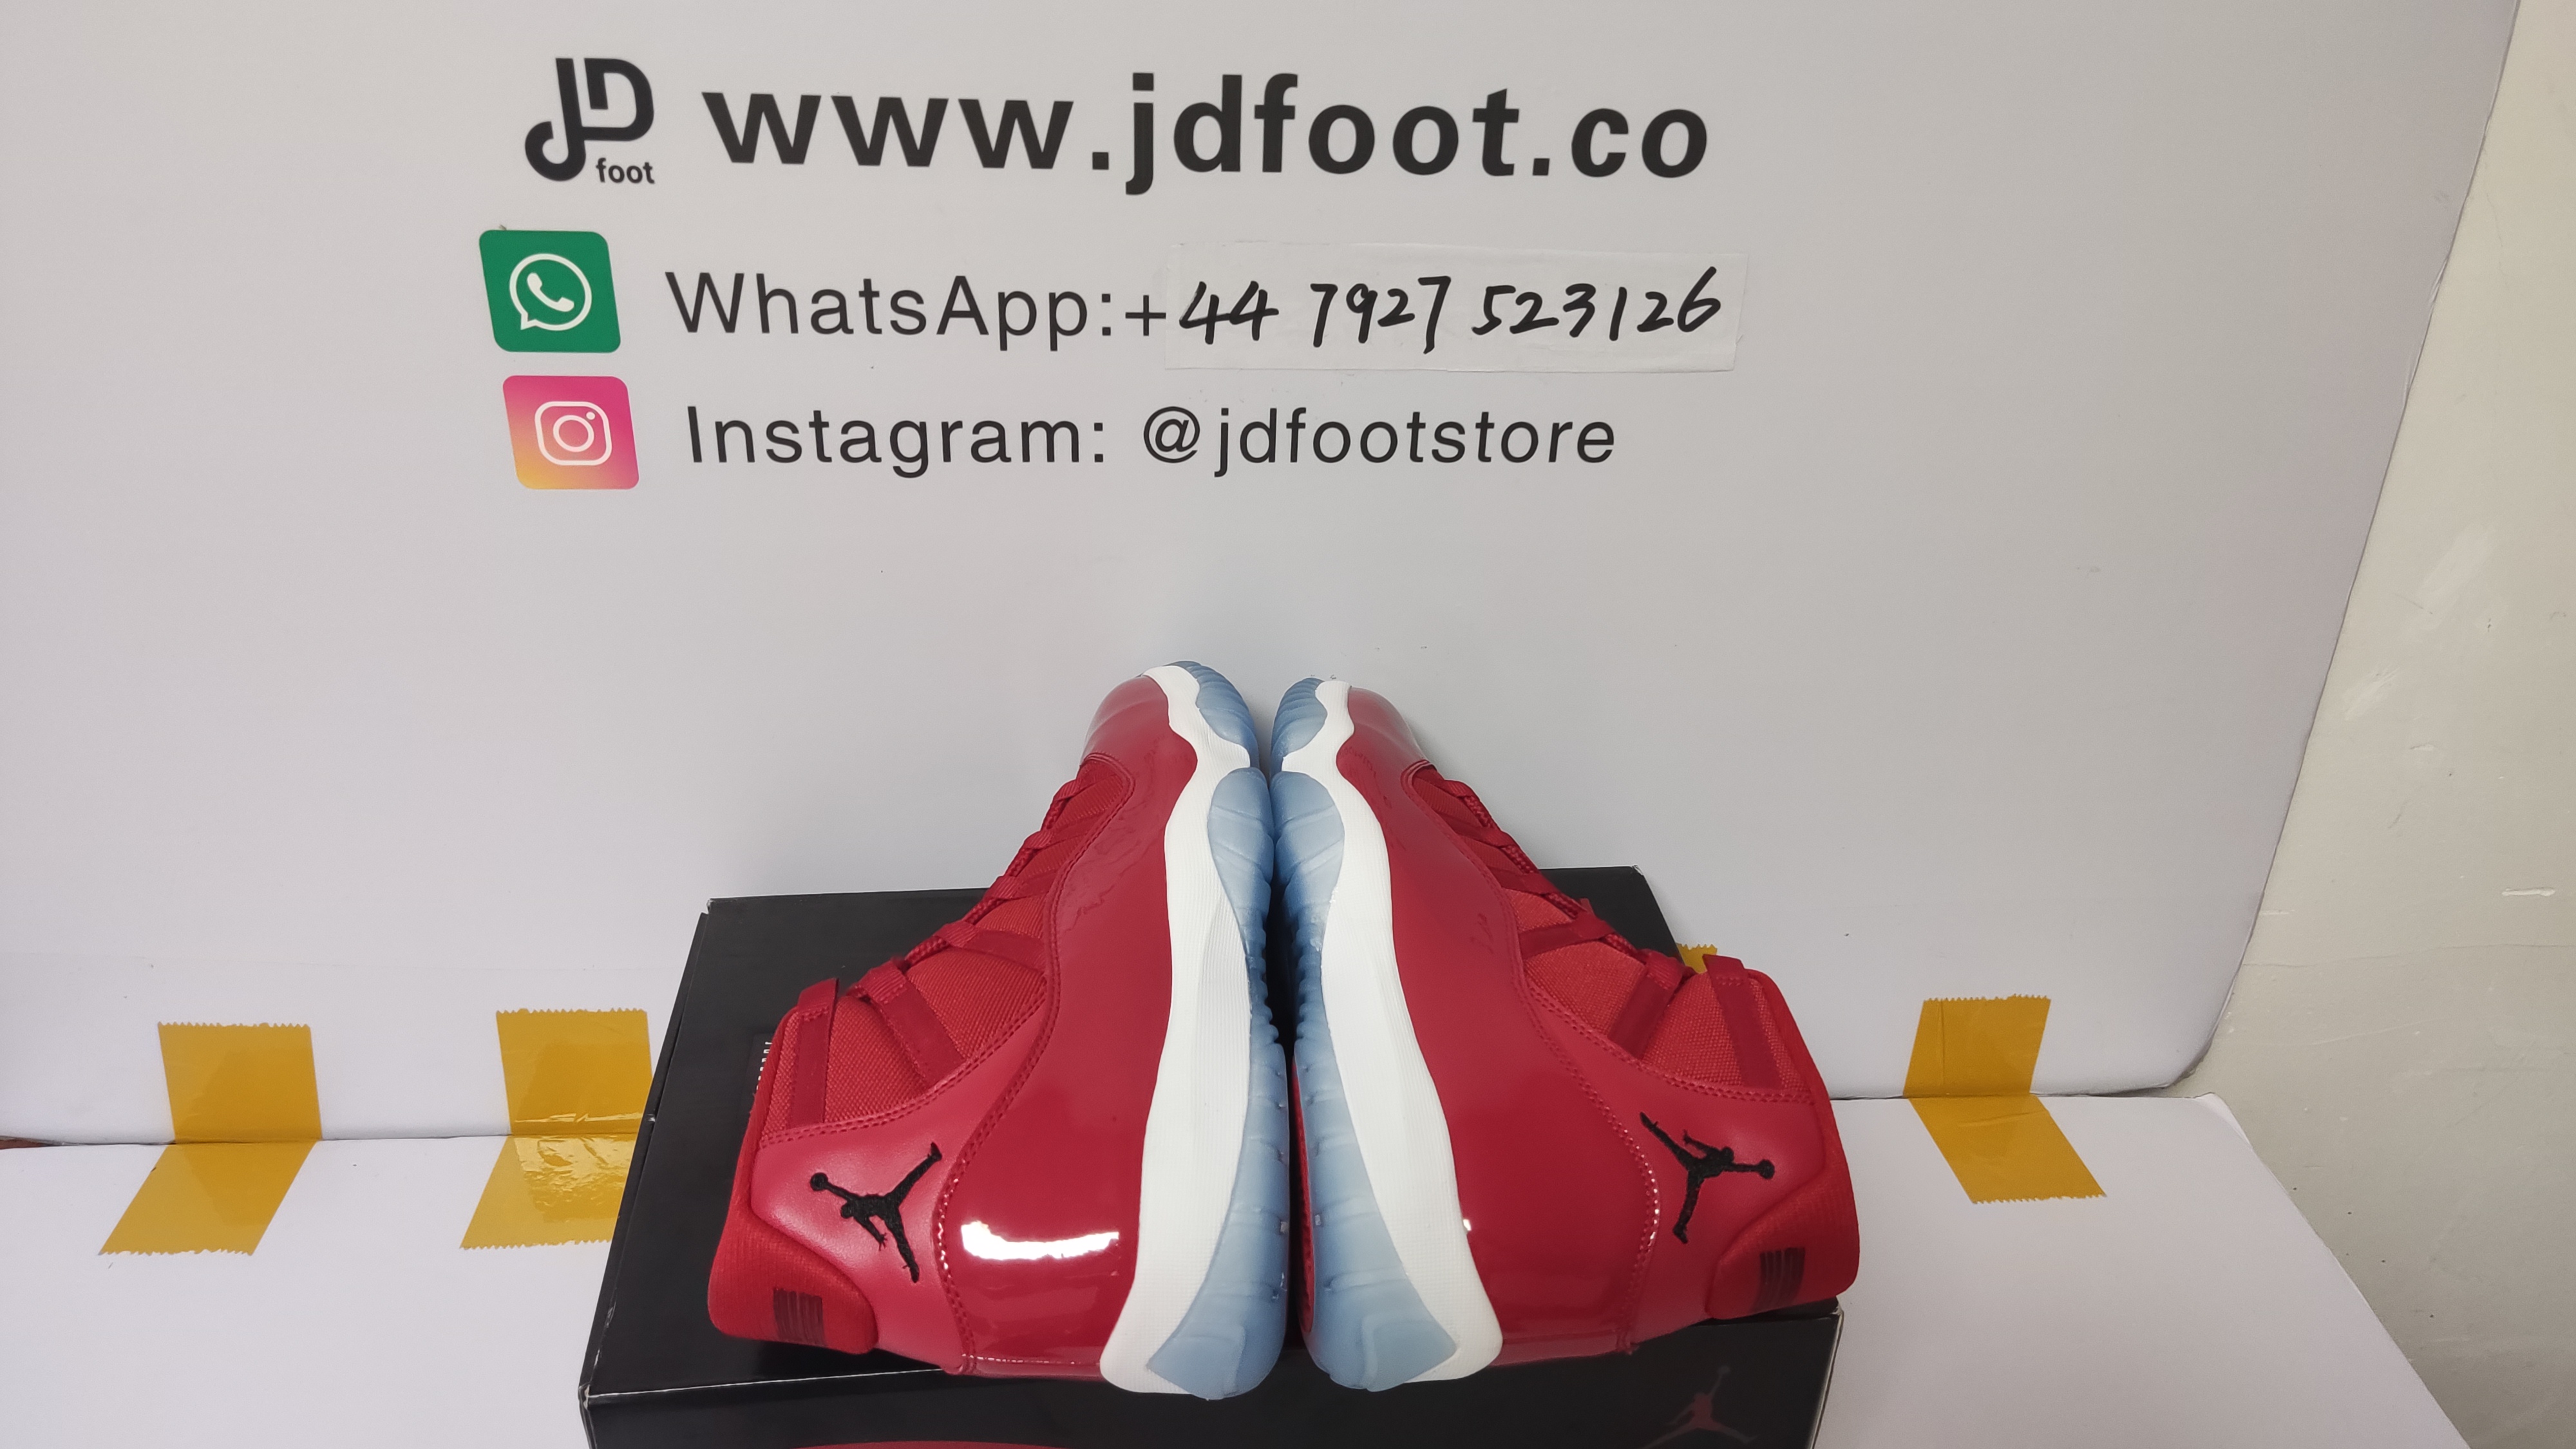 jdfoot,LJR,replica jordan 11,best replica sneakers